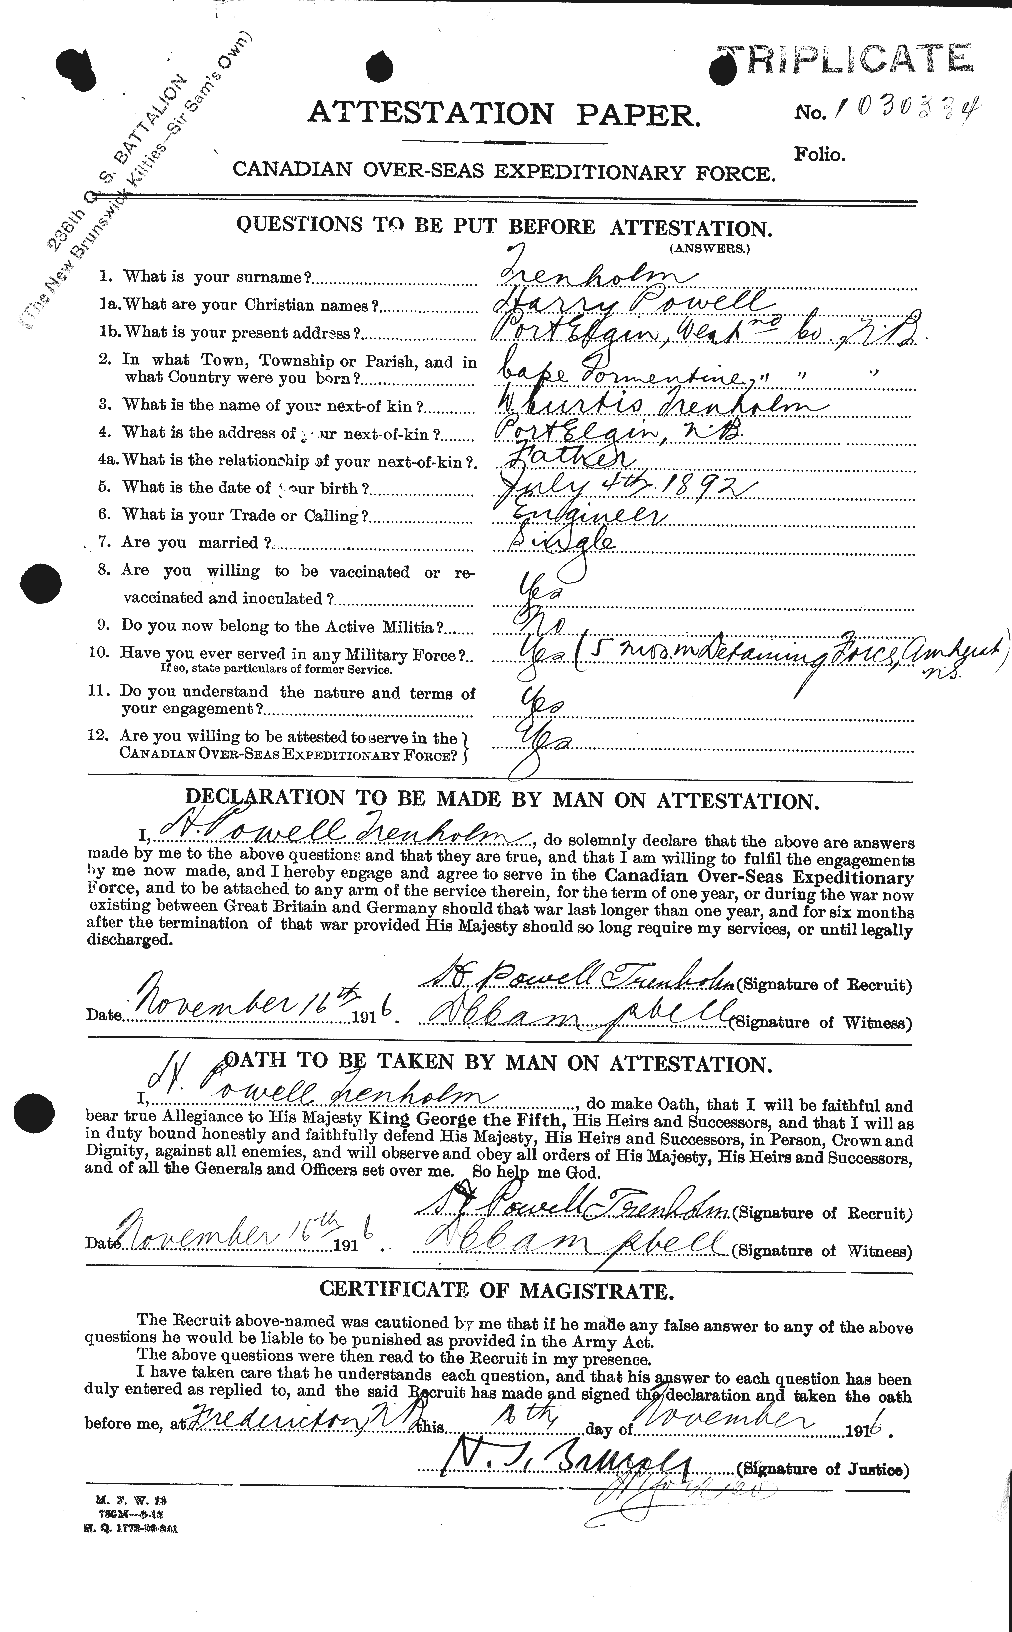 Dossiers du Personnel de la Première Guerre mondiale - CEC 638459a